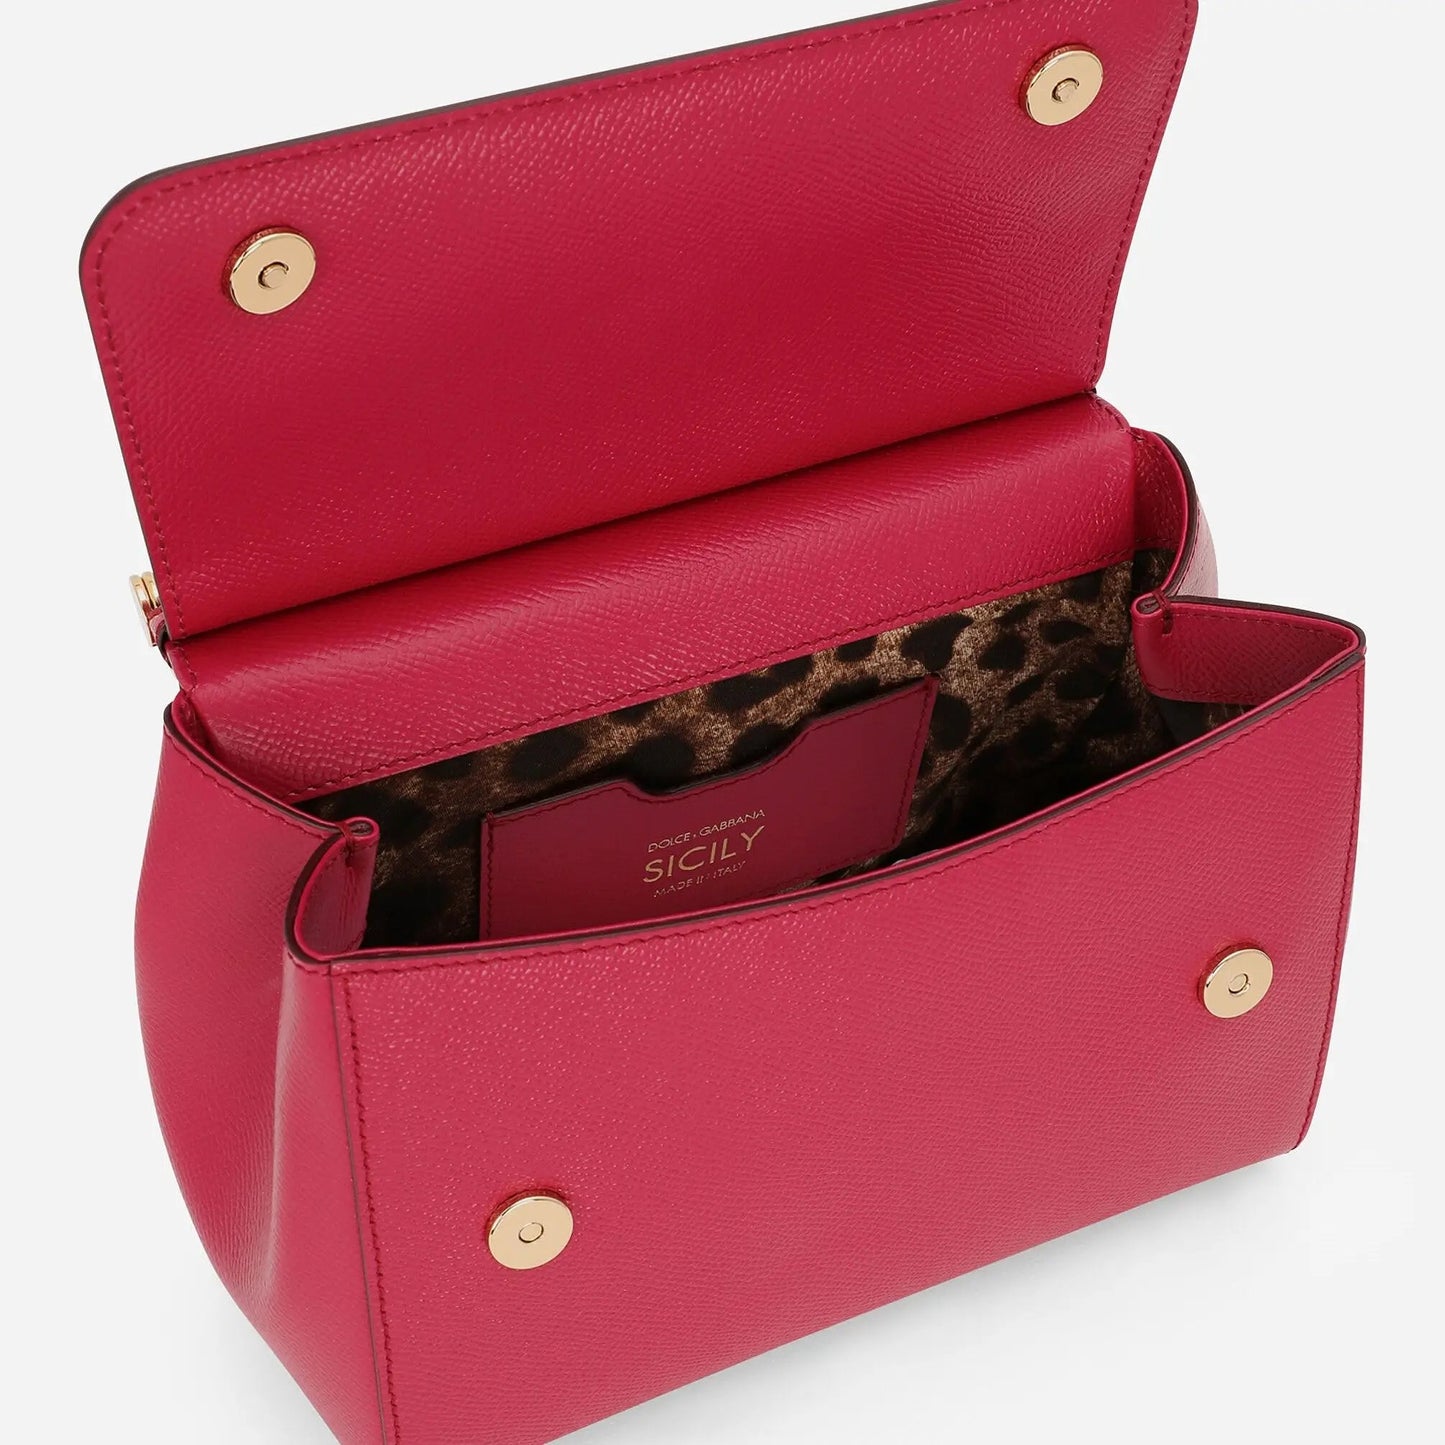 Sicily Medium Handbag in Fuchsia Handbags DOLCE & GABBANA - LOLAMIR